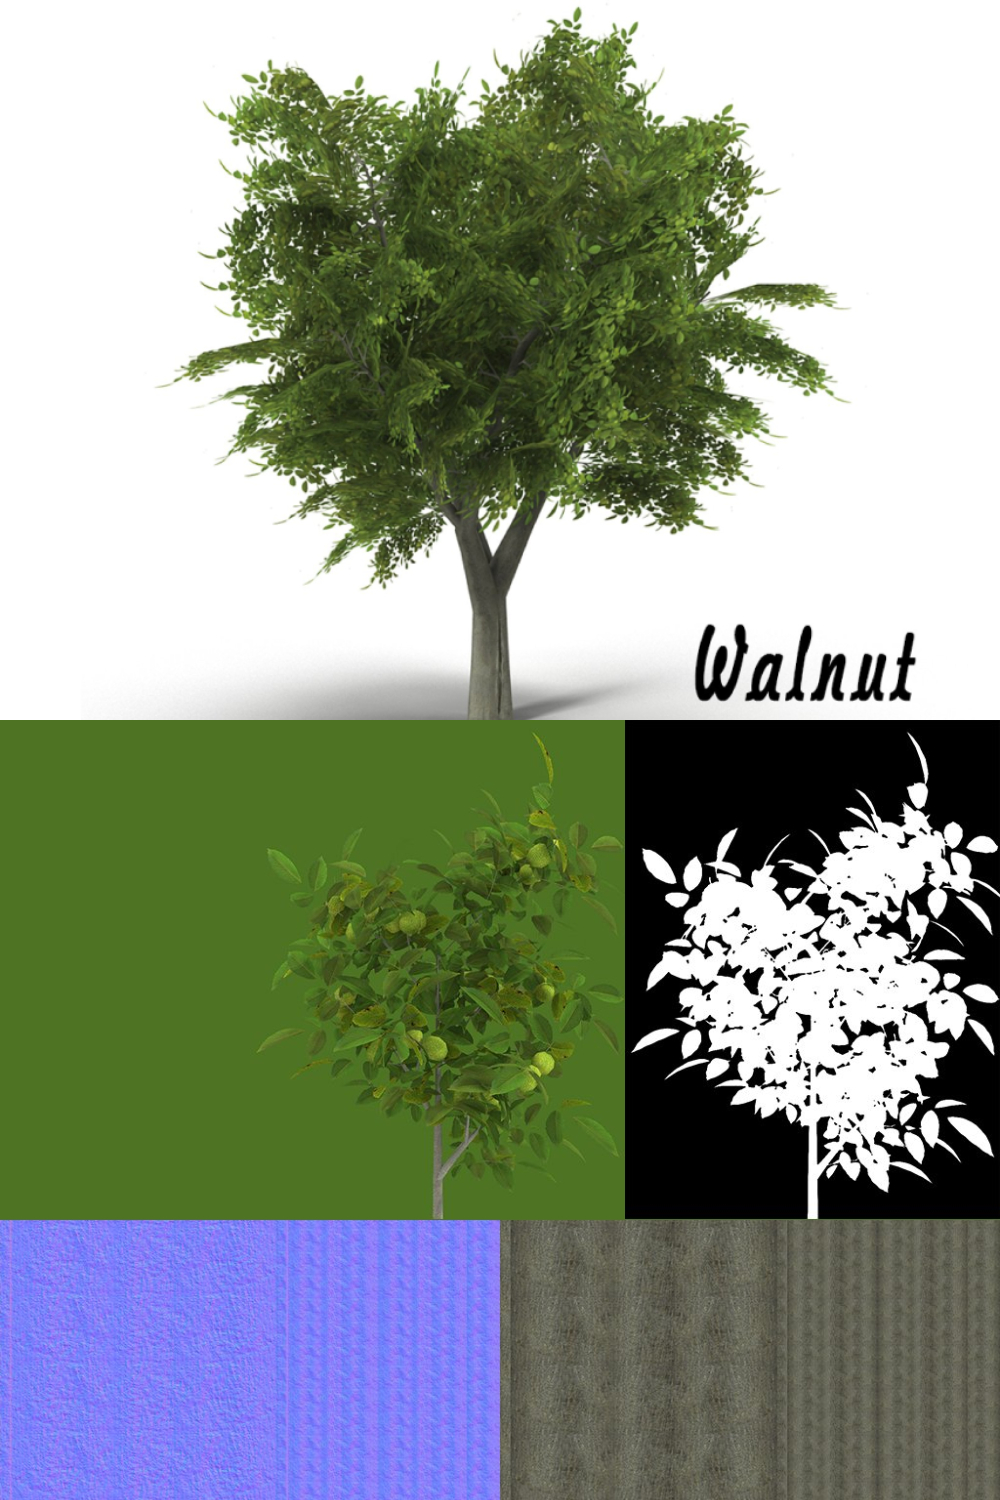 Walnut Tree - Pinterest.